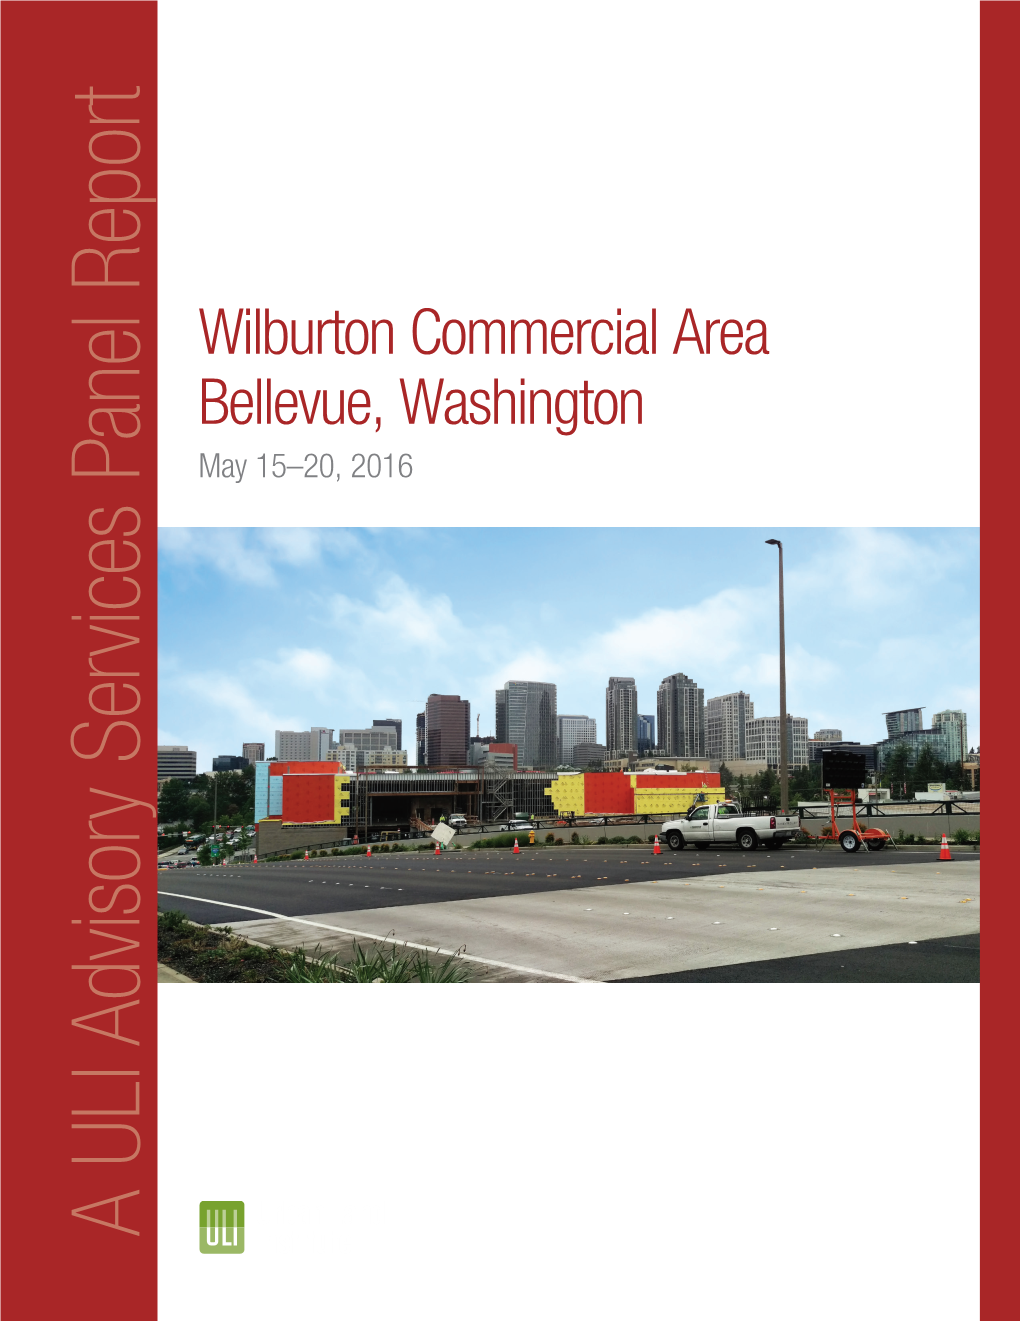 Report Panel Services Advisory ULI a Bellevue Cover.Indd 2 a ULI Advisory Services Panel Report May 15–20,2016 Bellevue, Washington Wilburton Commercialarea